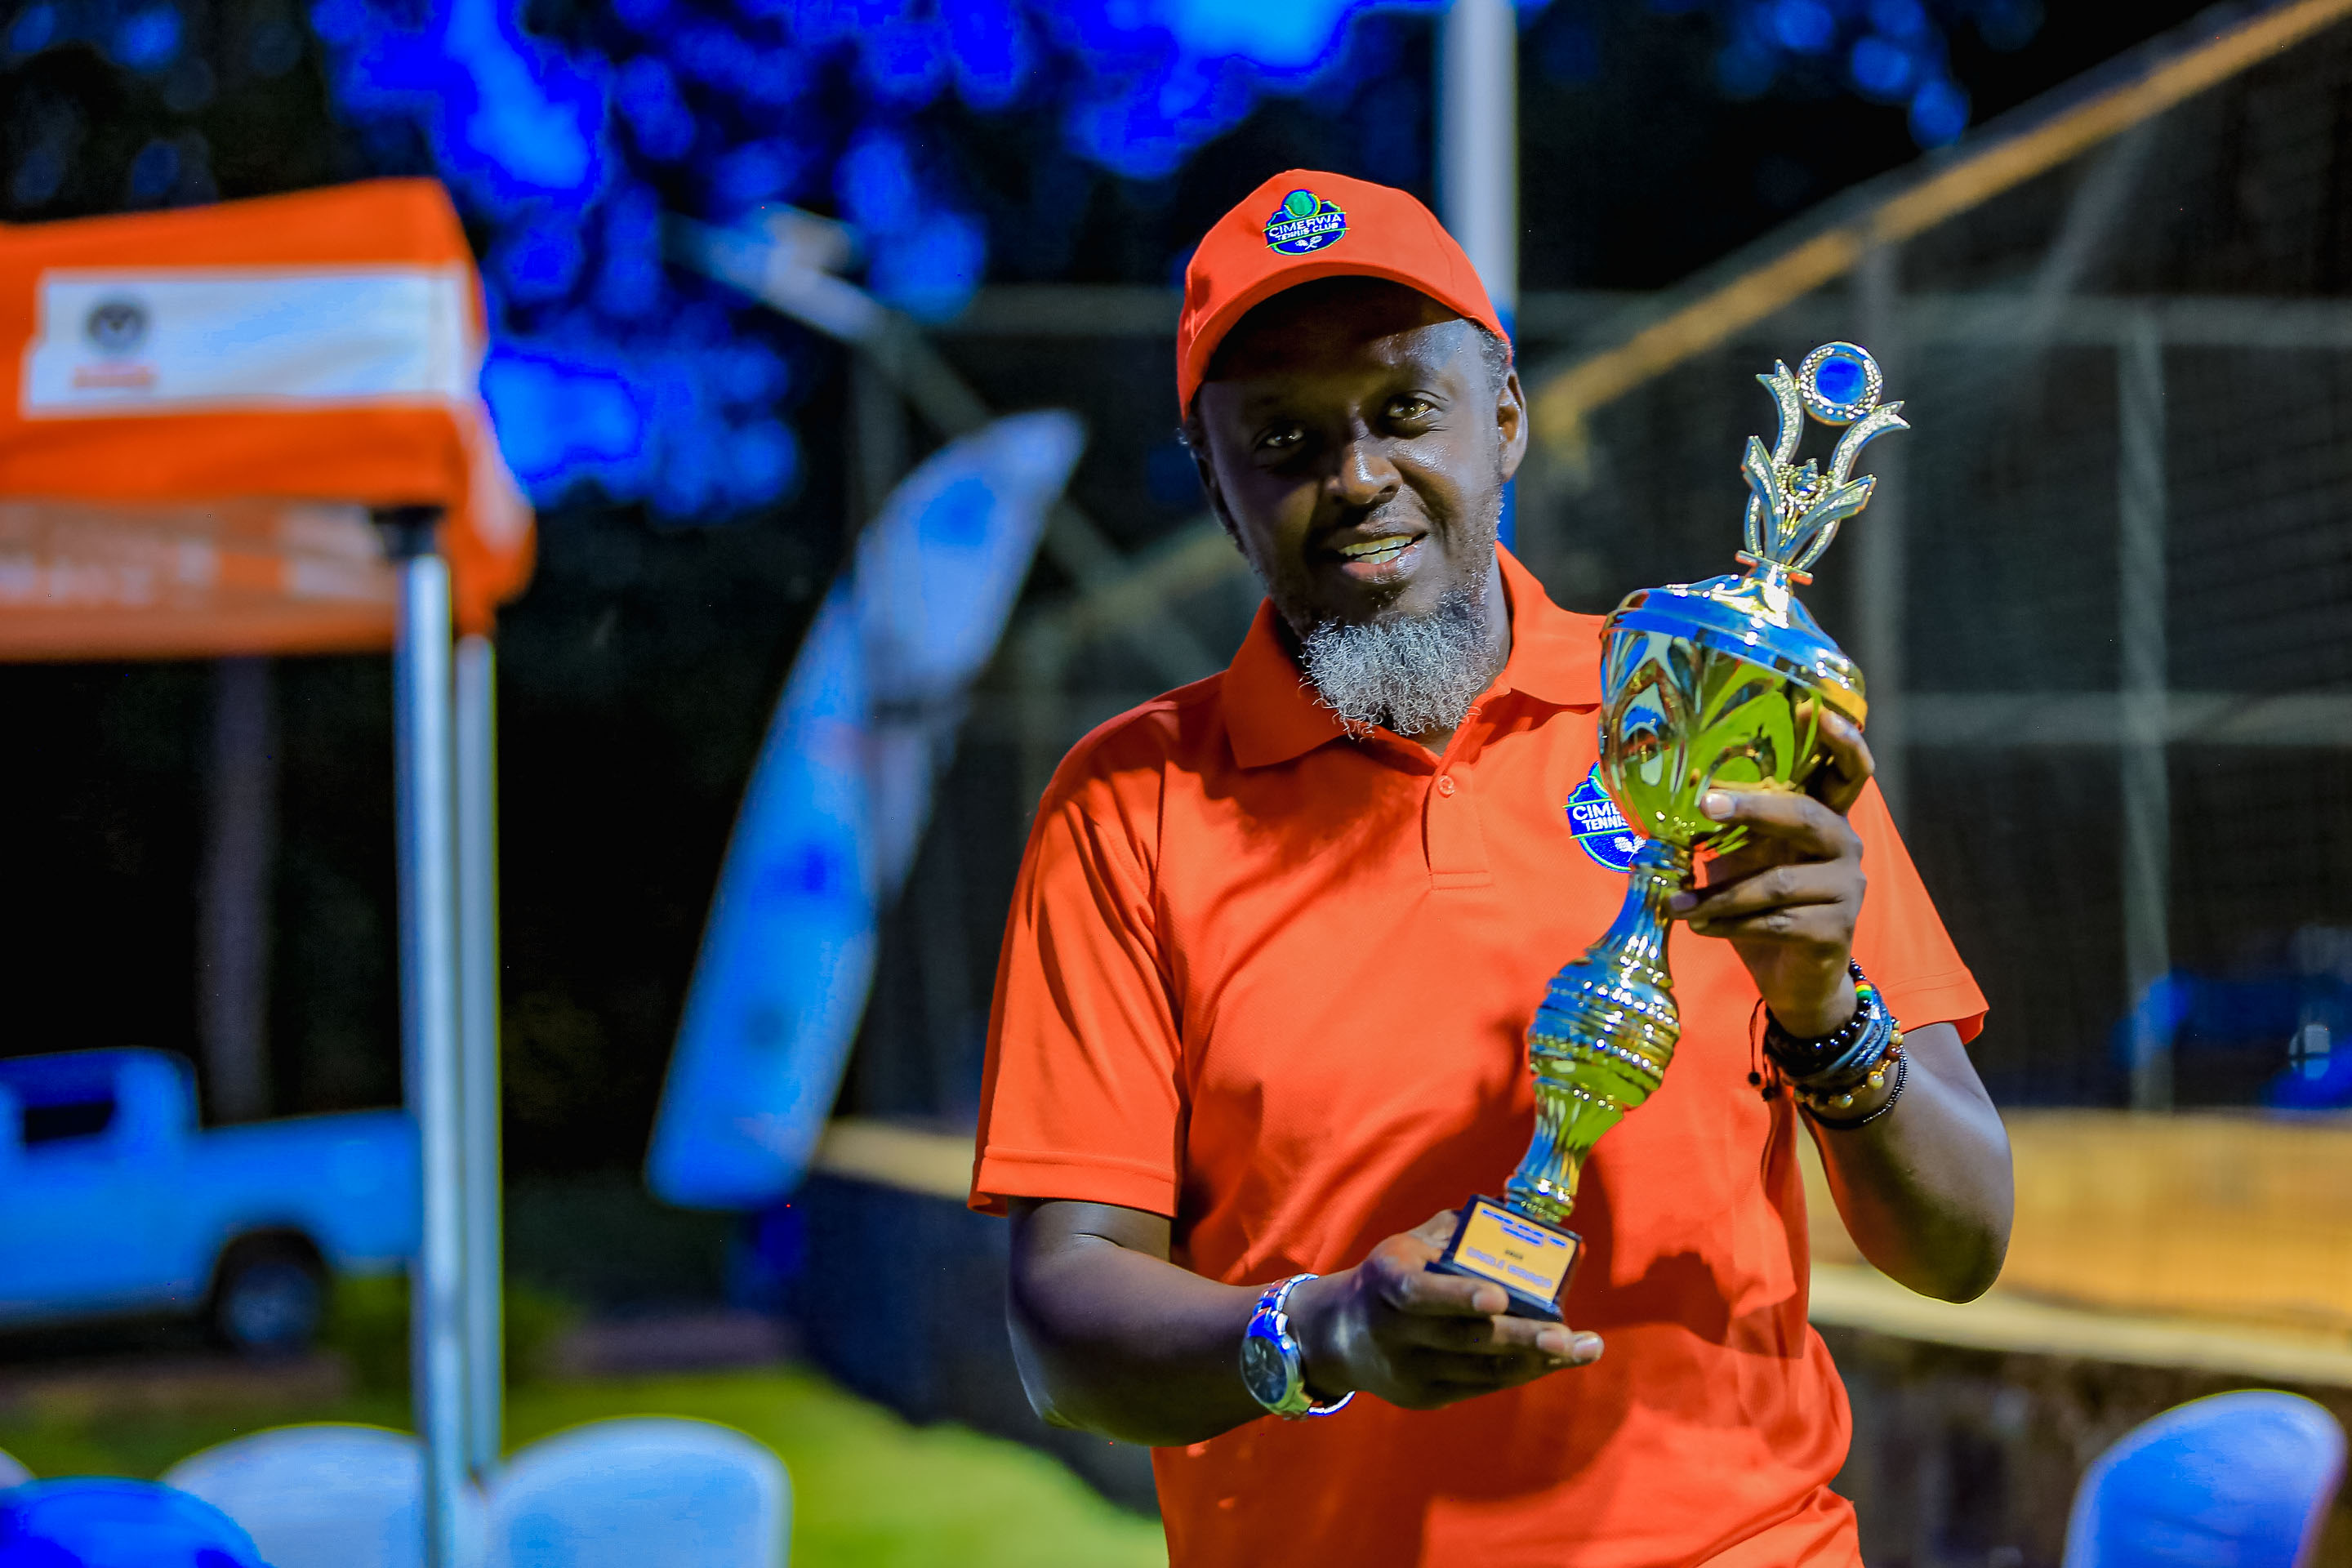 Theoneste Bahati ukinira Kicuciro Ecology Club ni we wegukanye iri rushanwa rya Tennis ryabereye muri IPRC- Kigali.